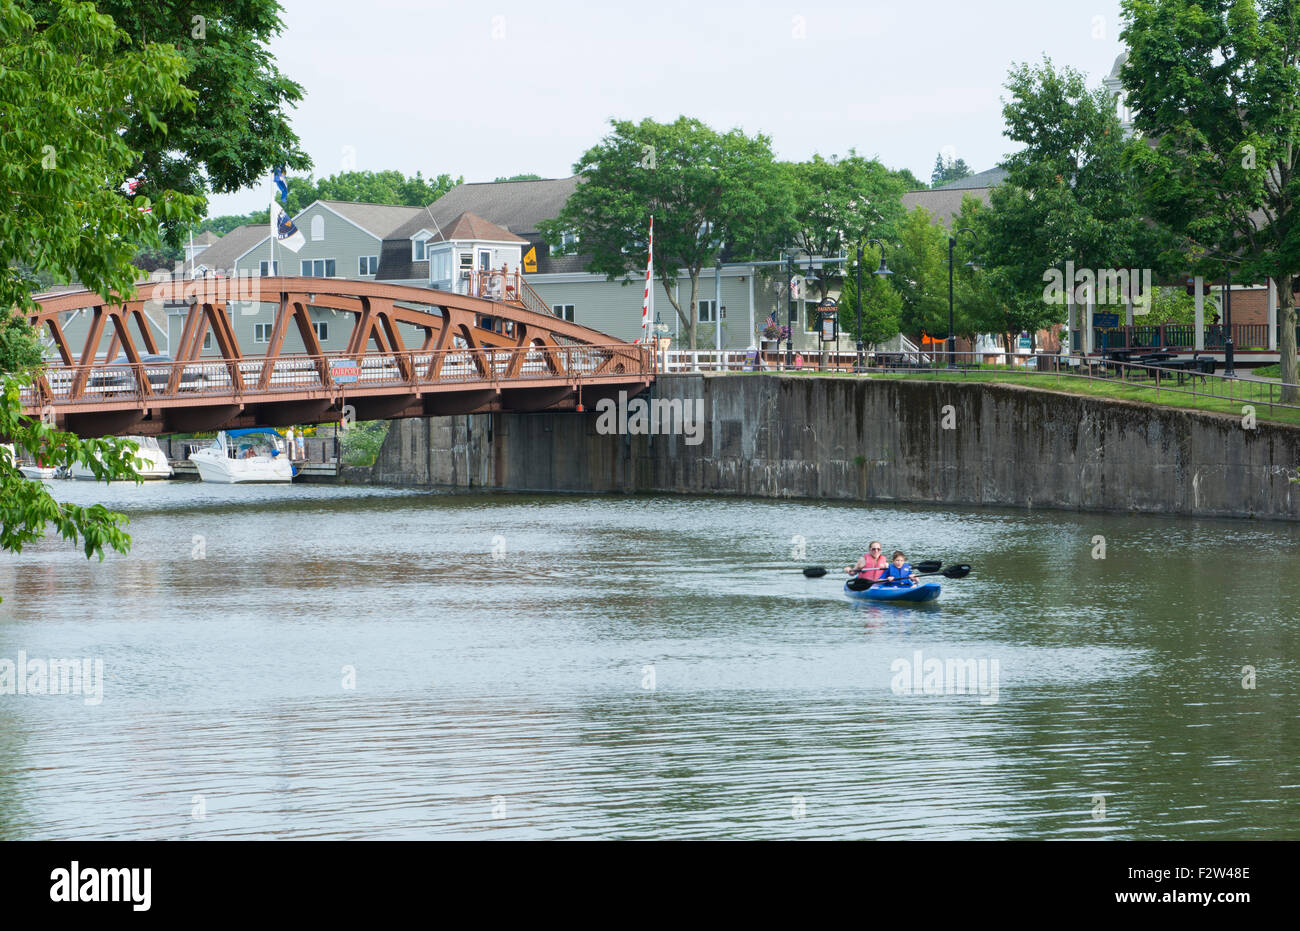 Rochester New York NY petite ville Fairport village et Erie Canal historique célèbre avec bateau et pont sur l'eau du canal Banque D'Images